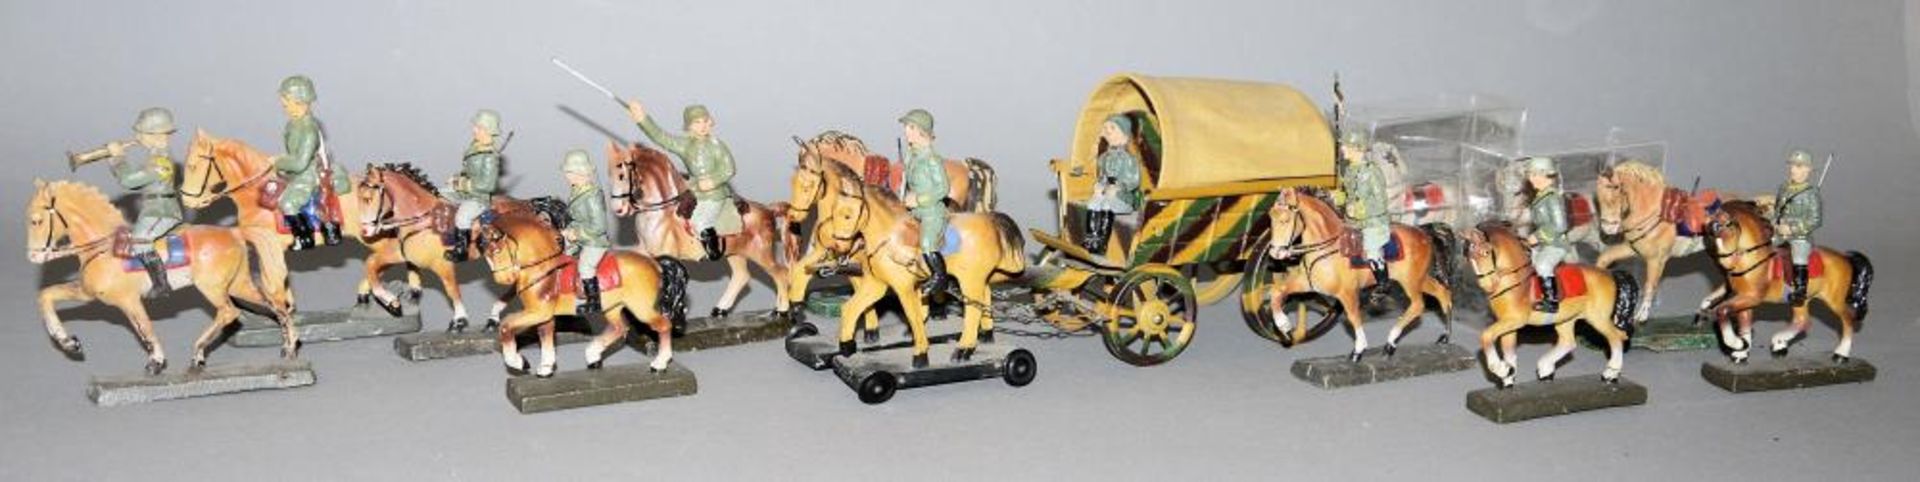 14 Spielzeug-Soldaten WK II Berittene & Planwagen, Elastolin/ Lineol u.a. 8 x Reiter und 4 x